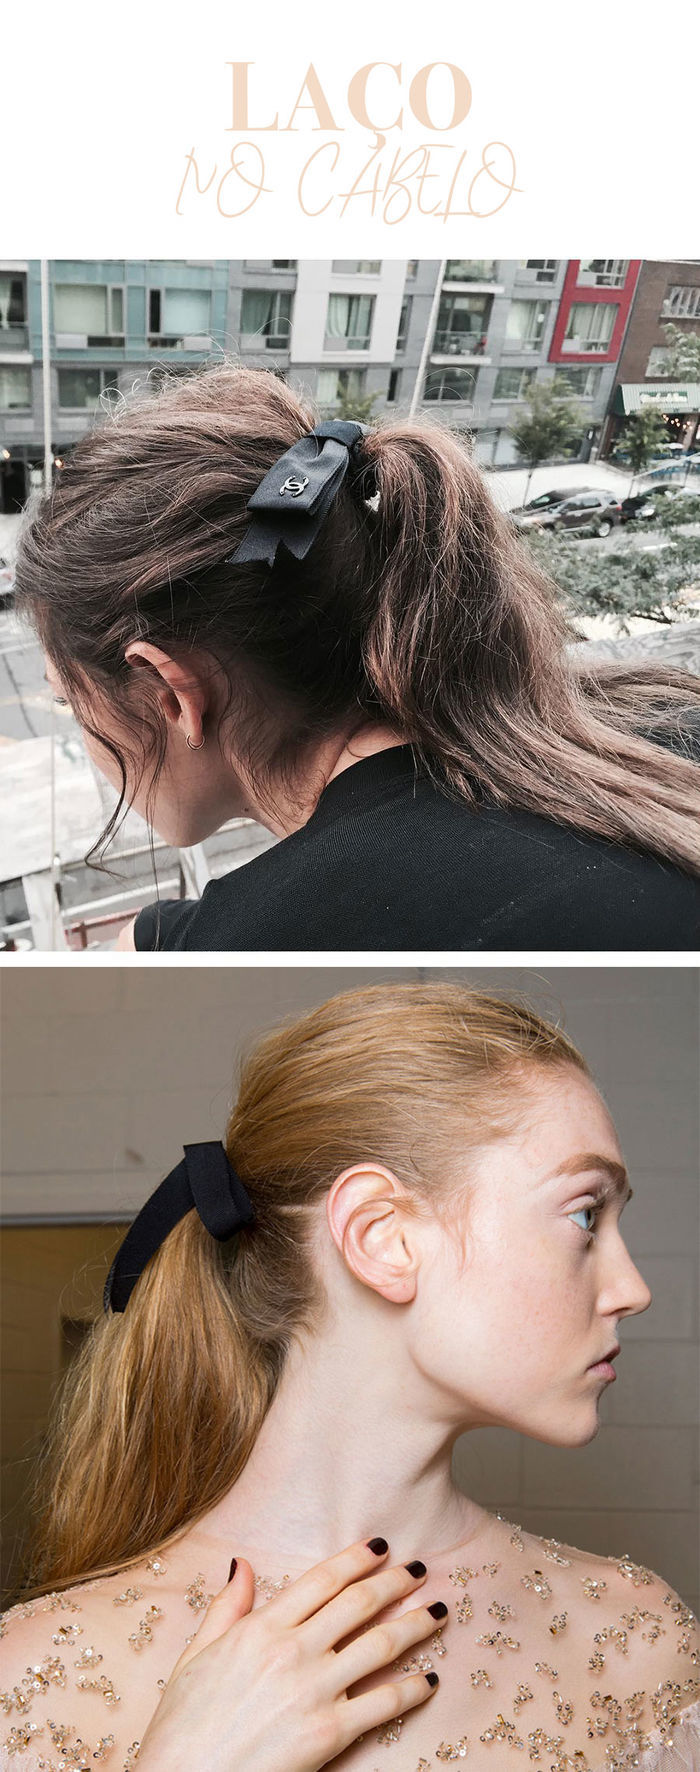 Como usar tendência laços no cabelo - por Layla Monteiro